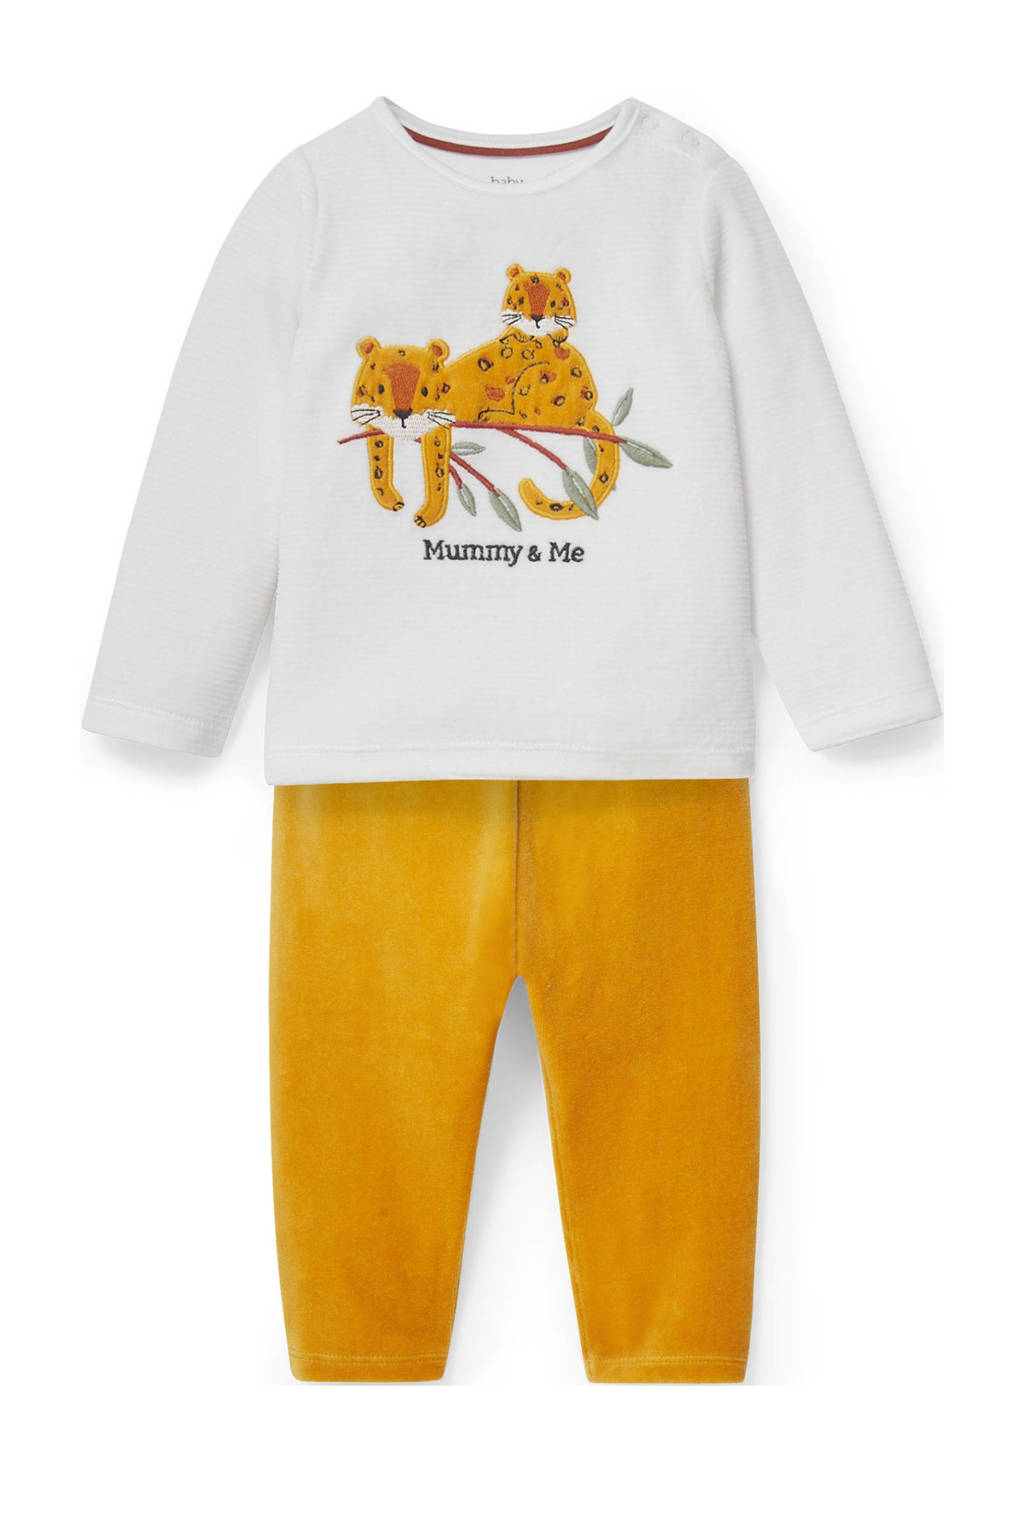 C&A   pyjama geel/wit, Geel/wit